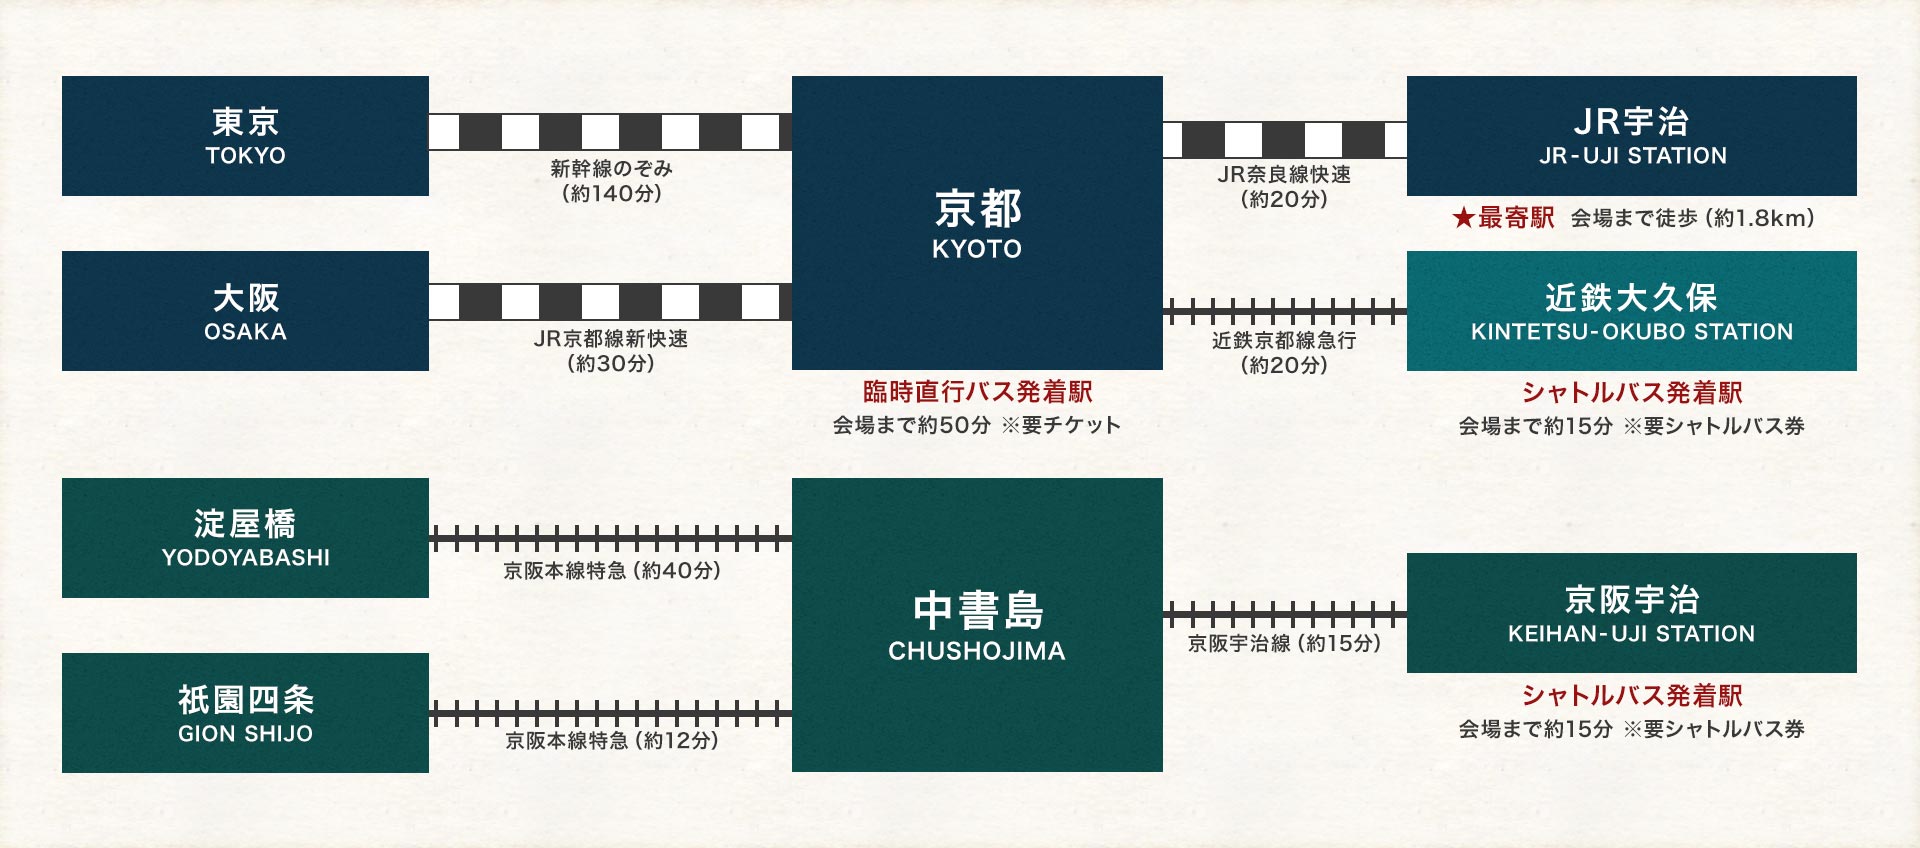 会場までの電車でのアクセス図:最寄り駅はJR宇治駅です。